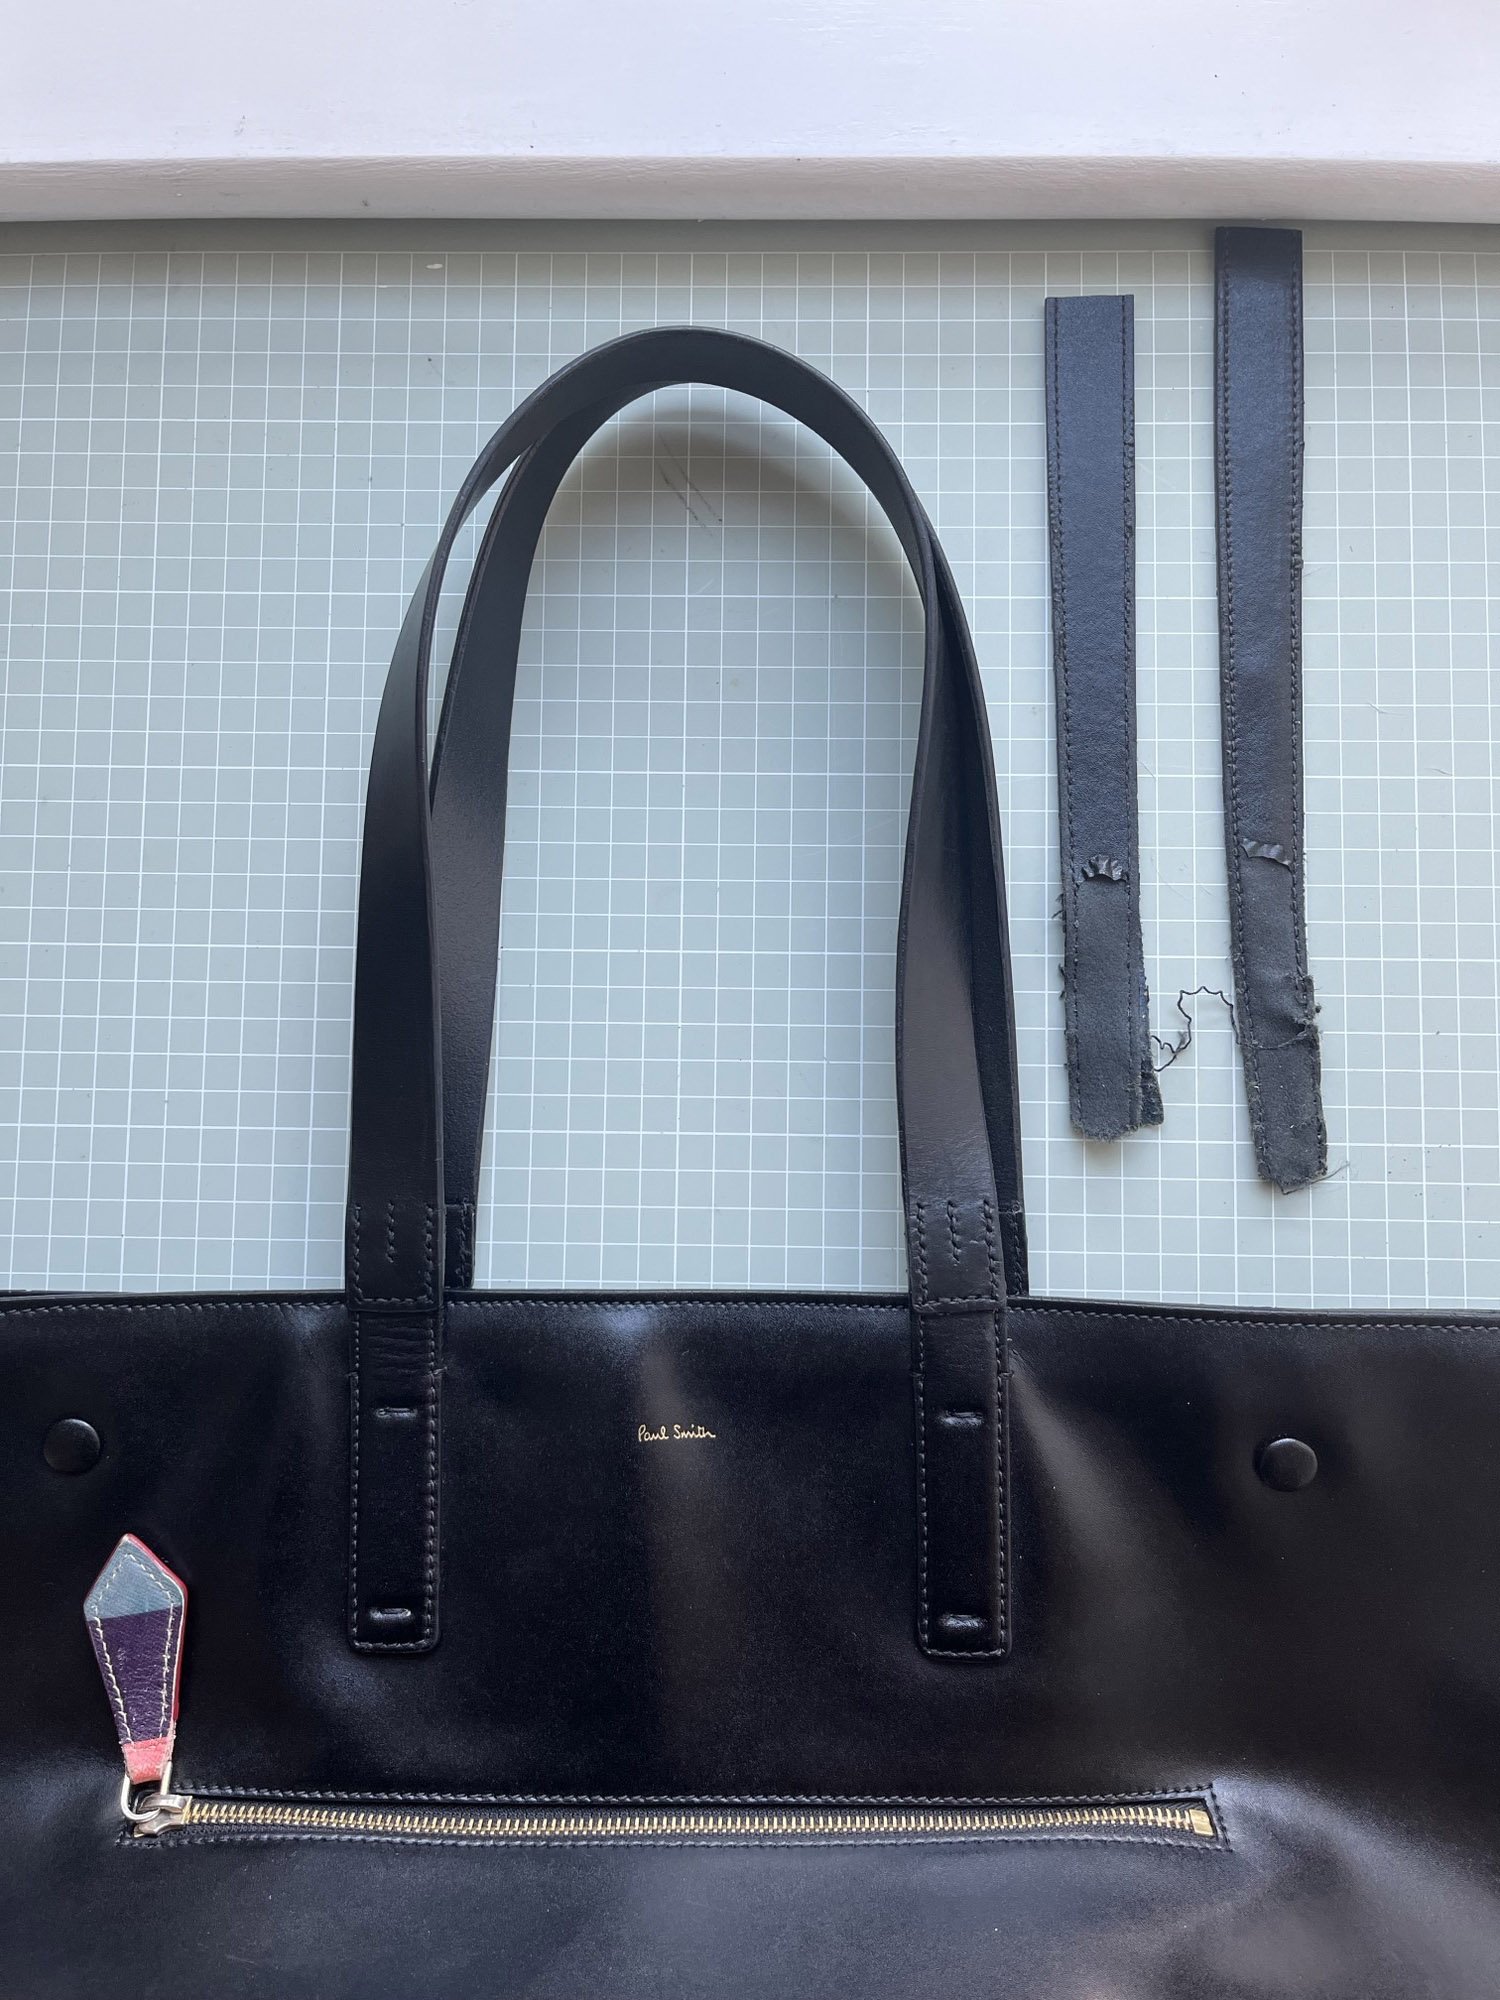 bag strap repair